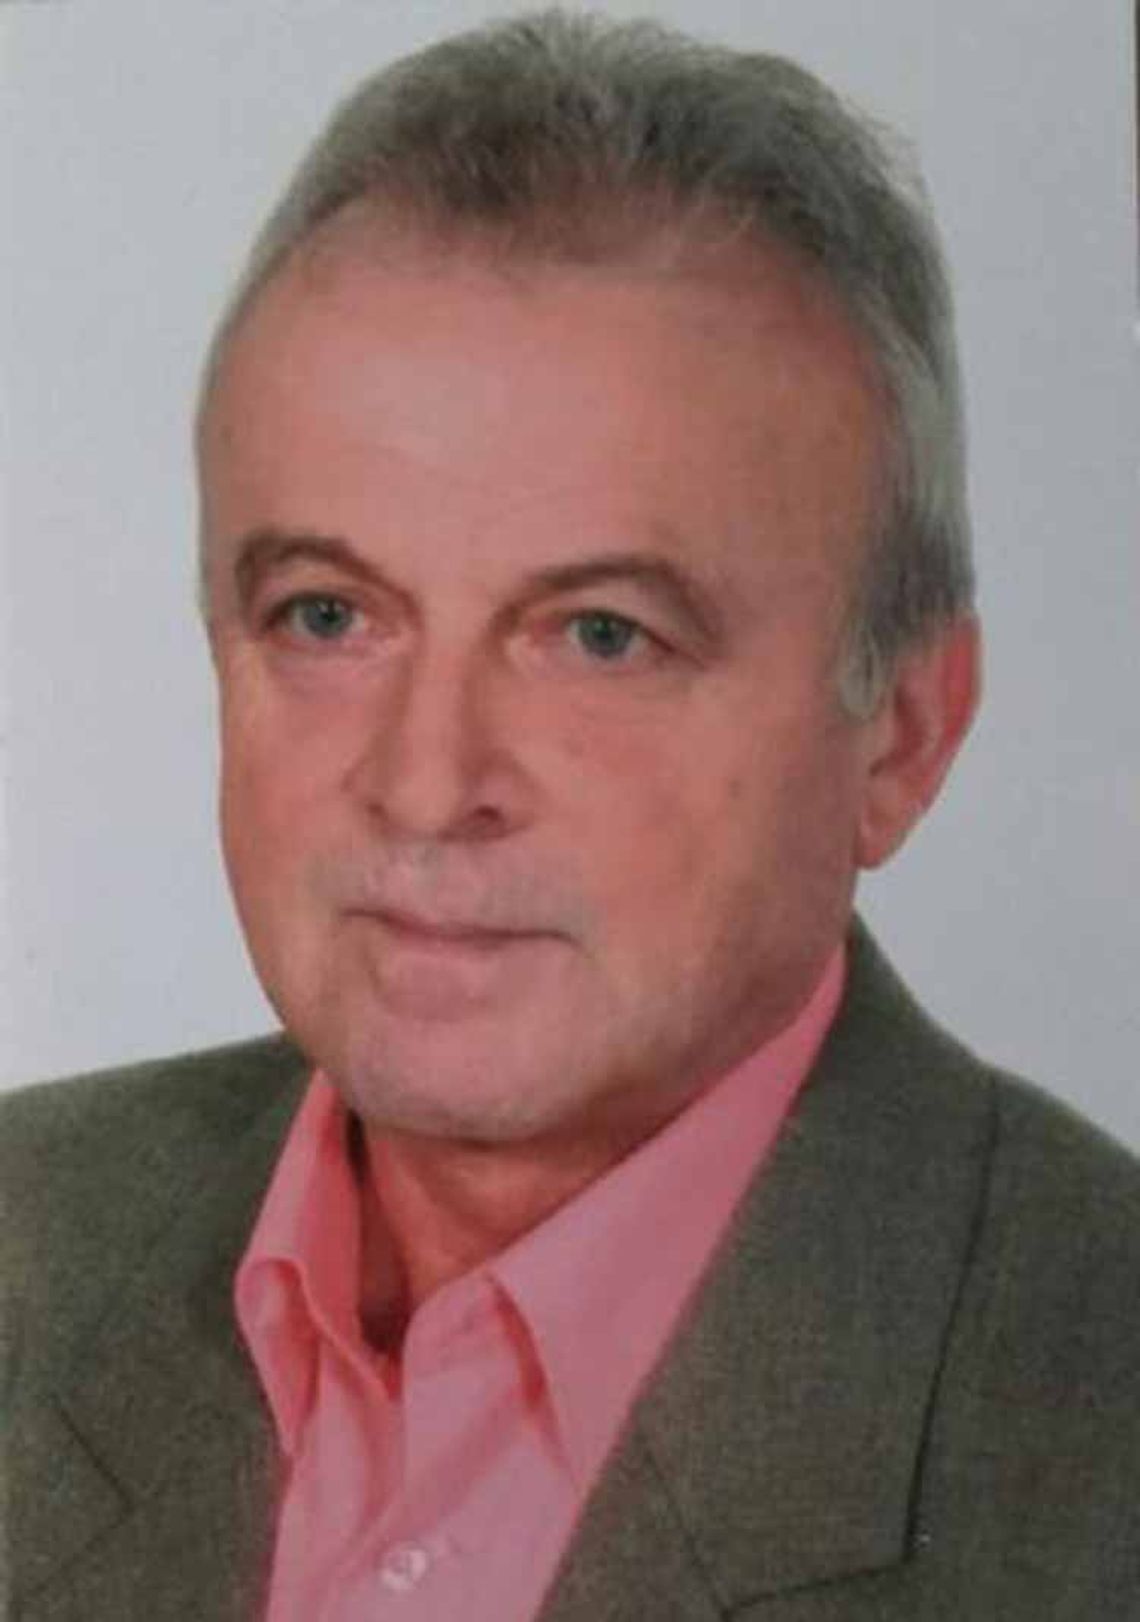 Zaginiony - Zbigniew Kostuj - został odnaleziony informuje Policja.